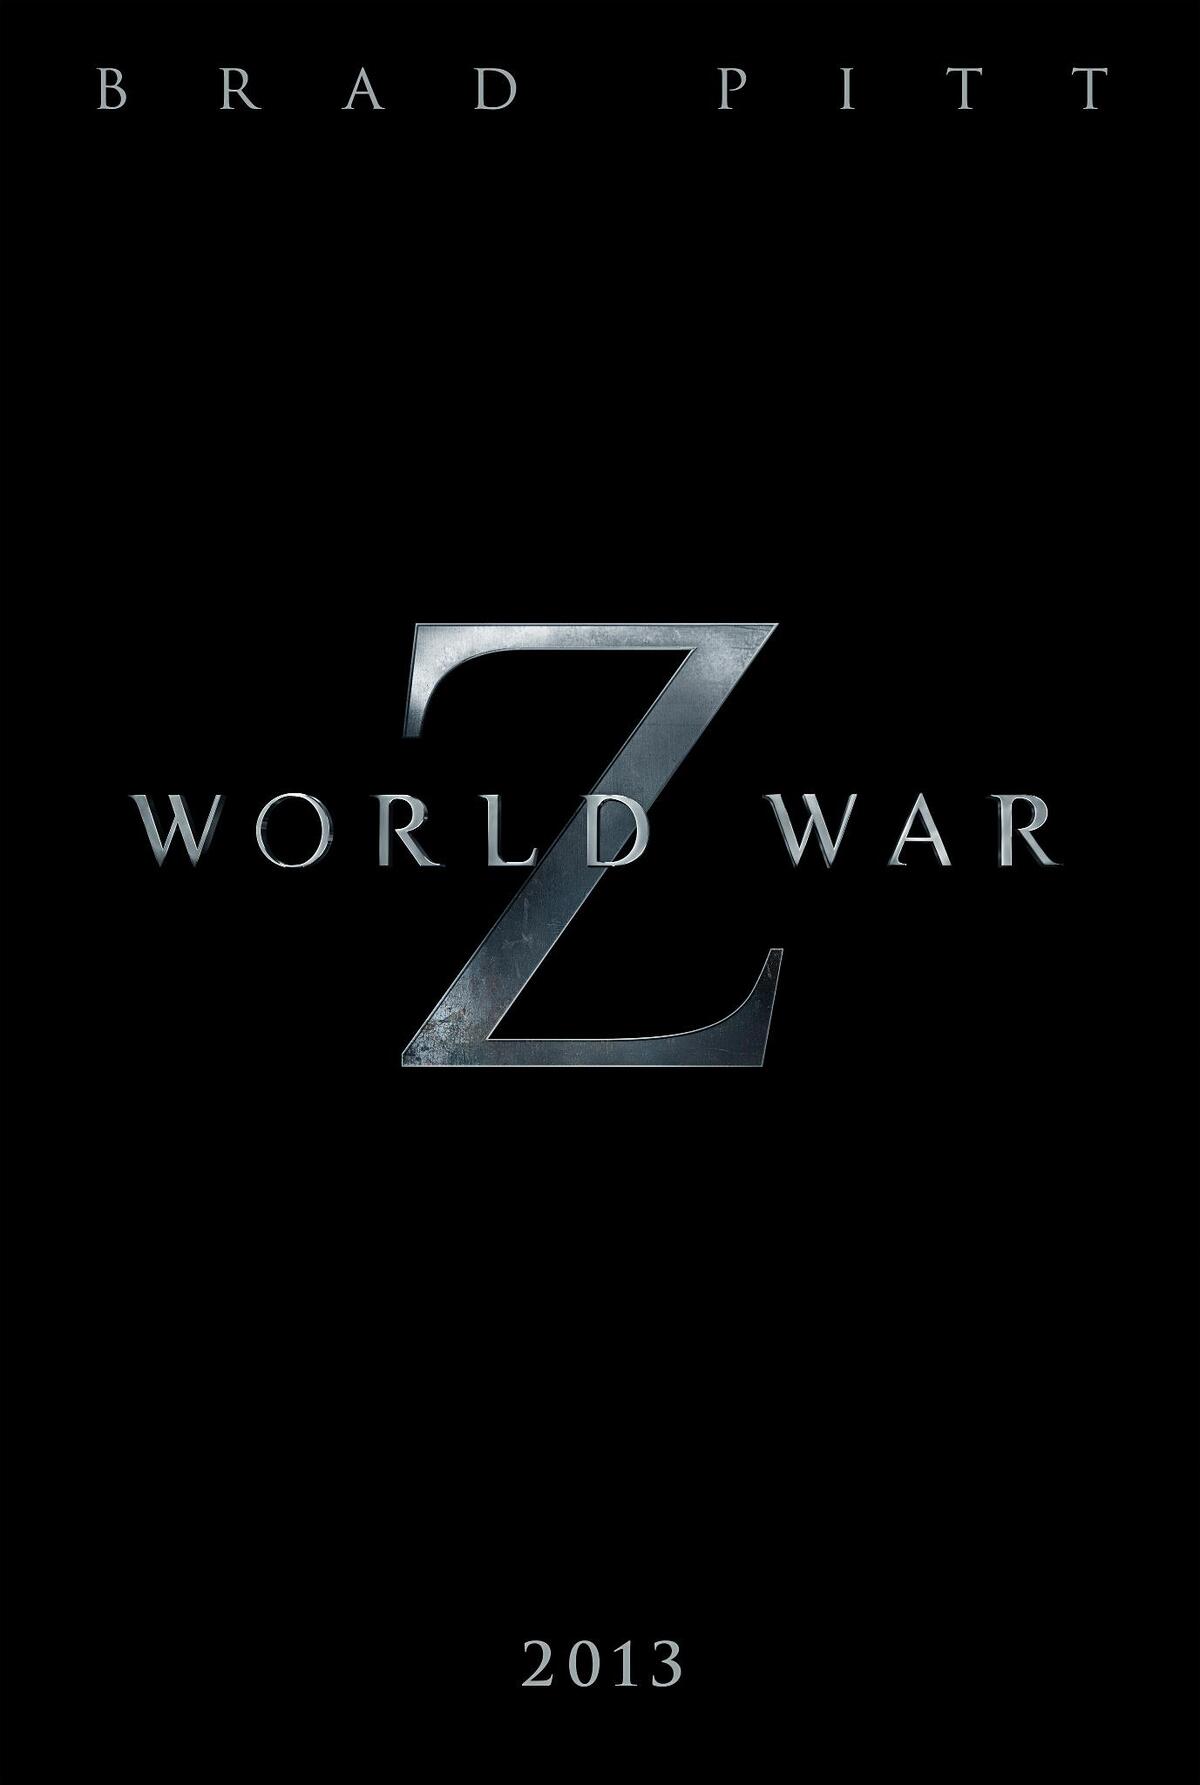 Трейлер фильма "Война миров Z"